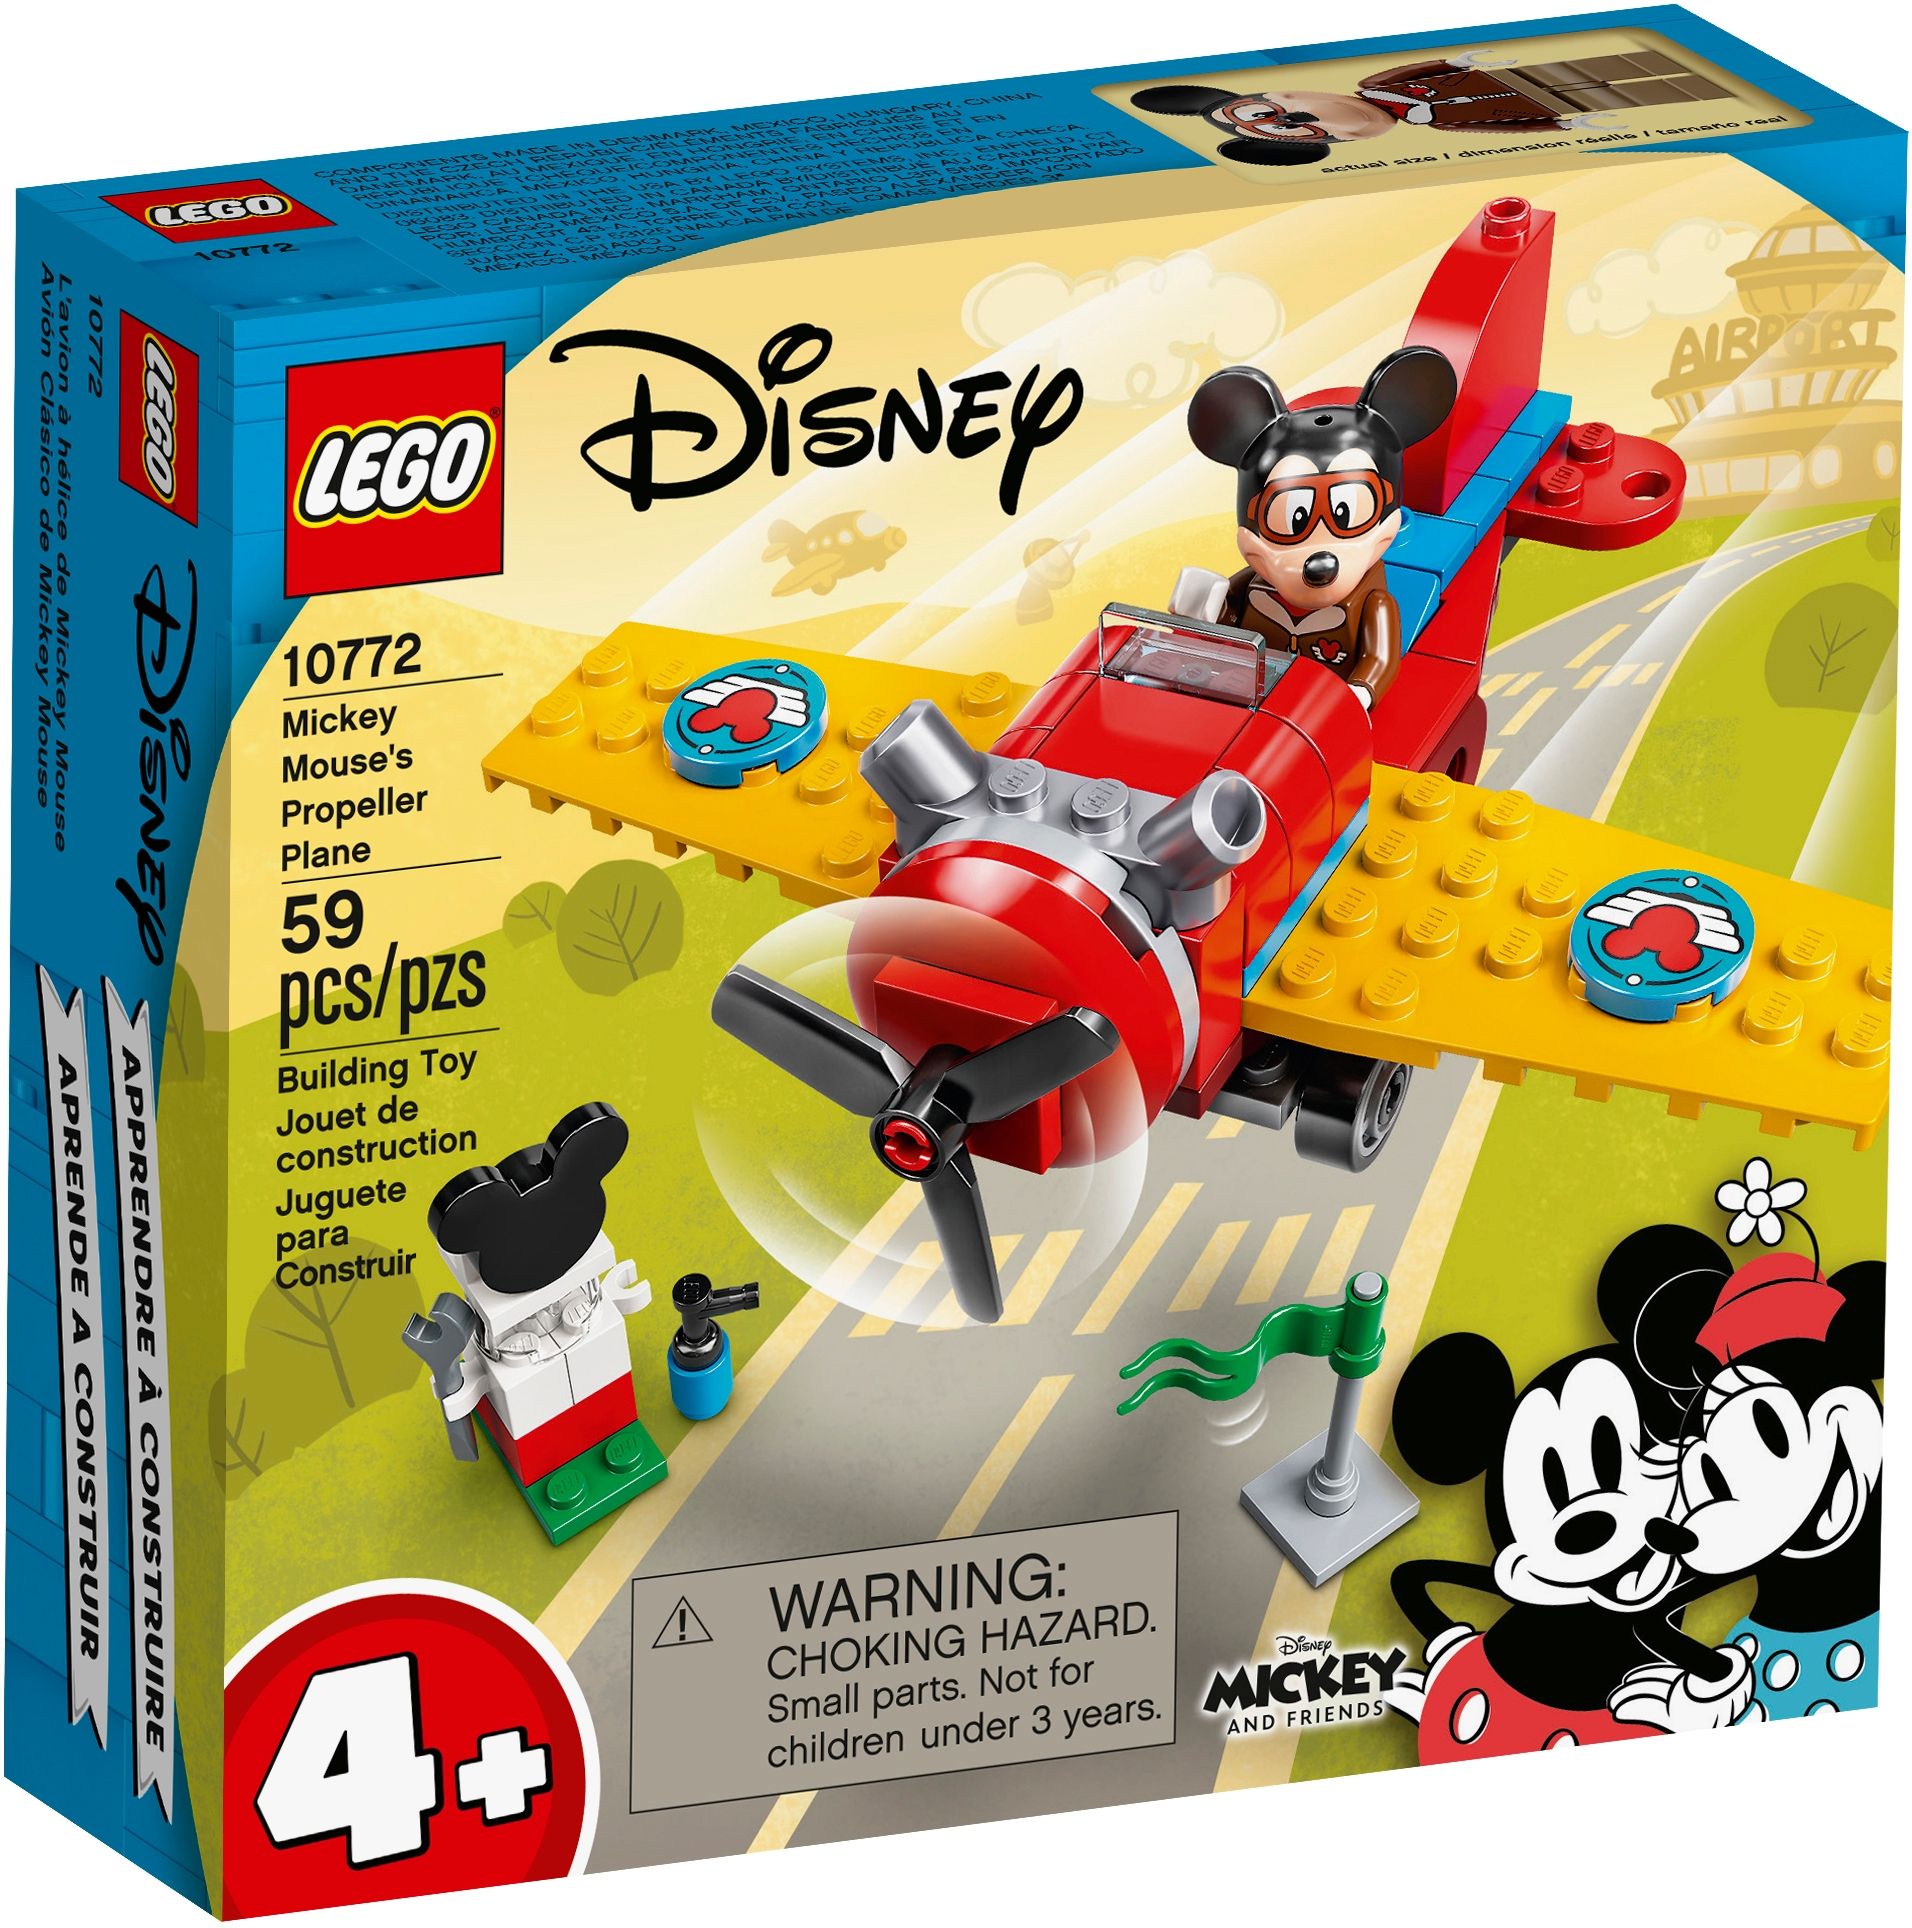 LEGO Disney 10772 Mickys Propellerflugzeug LEGO_10772_alt1.jpg